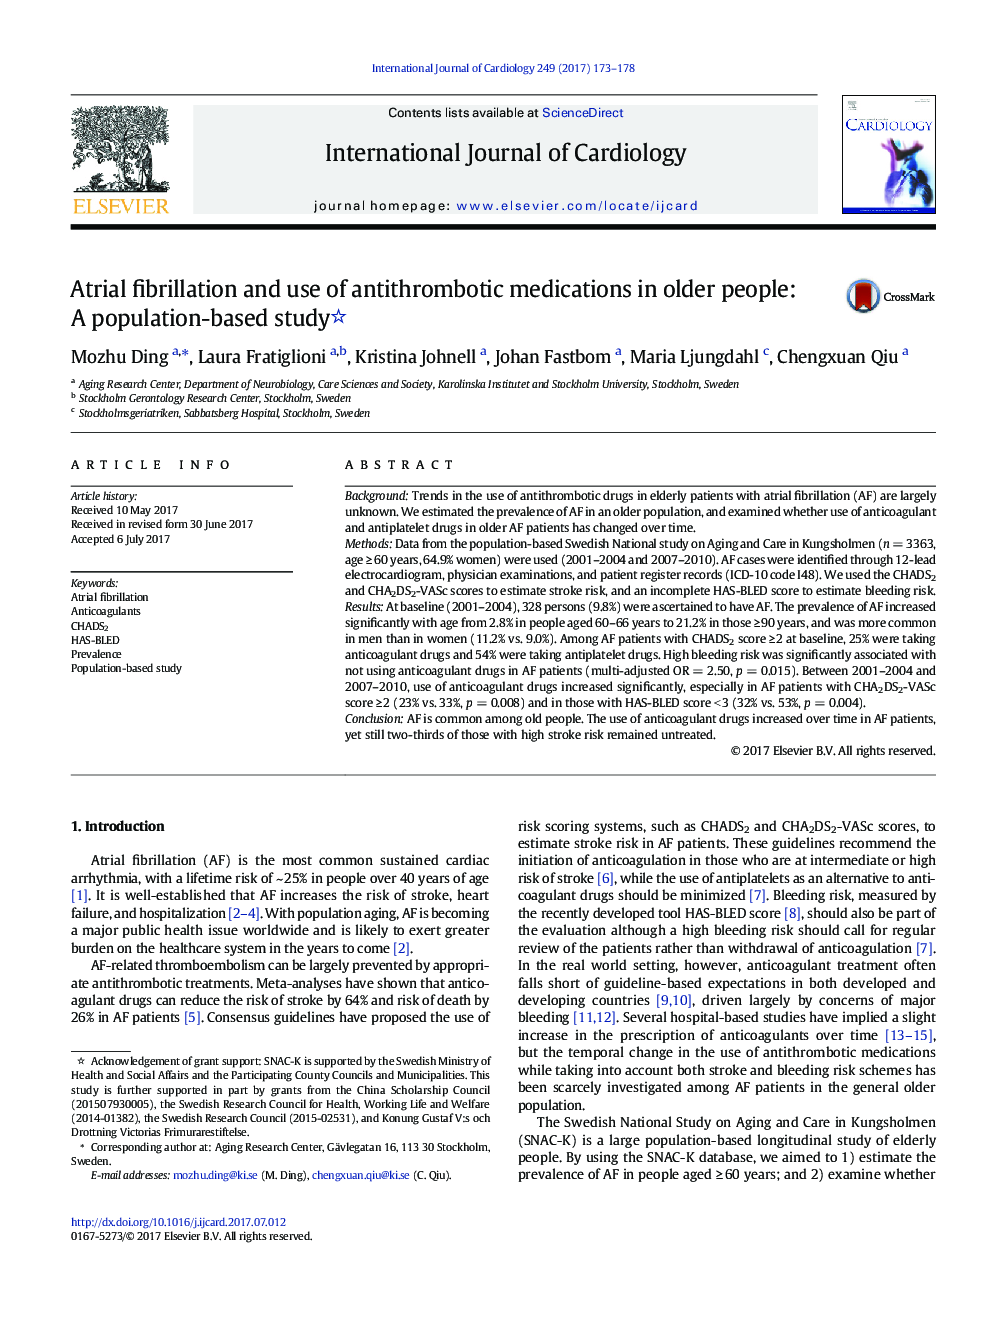 فیبریلاسیون دهلیزی و استفاده از داروهای آنتی ترومبوتیک در افراد سالمند: یک مطالعه مبتنی بر جمعیت 